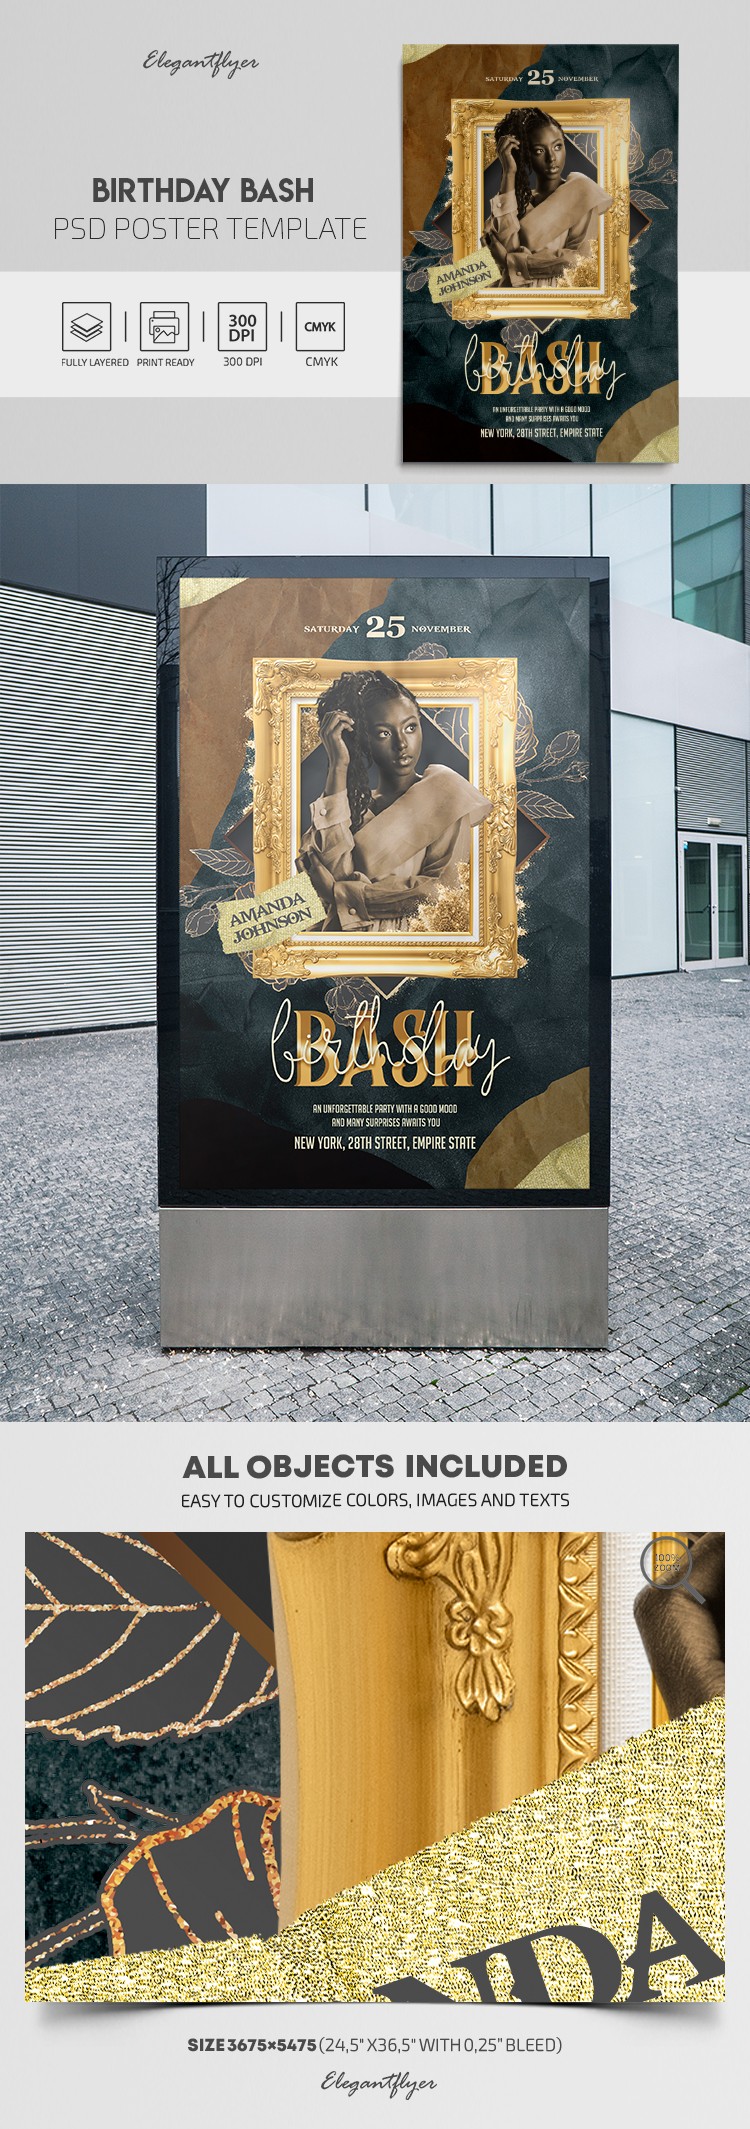 Birthday Bash Poster by ElegantFlyer